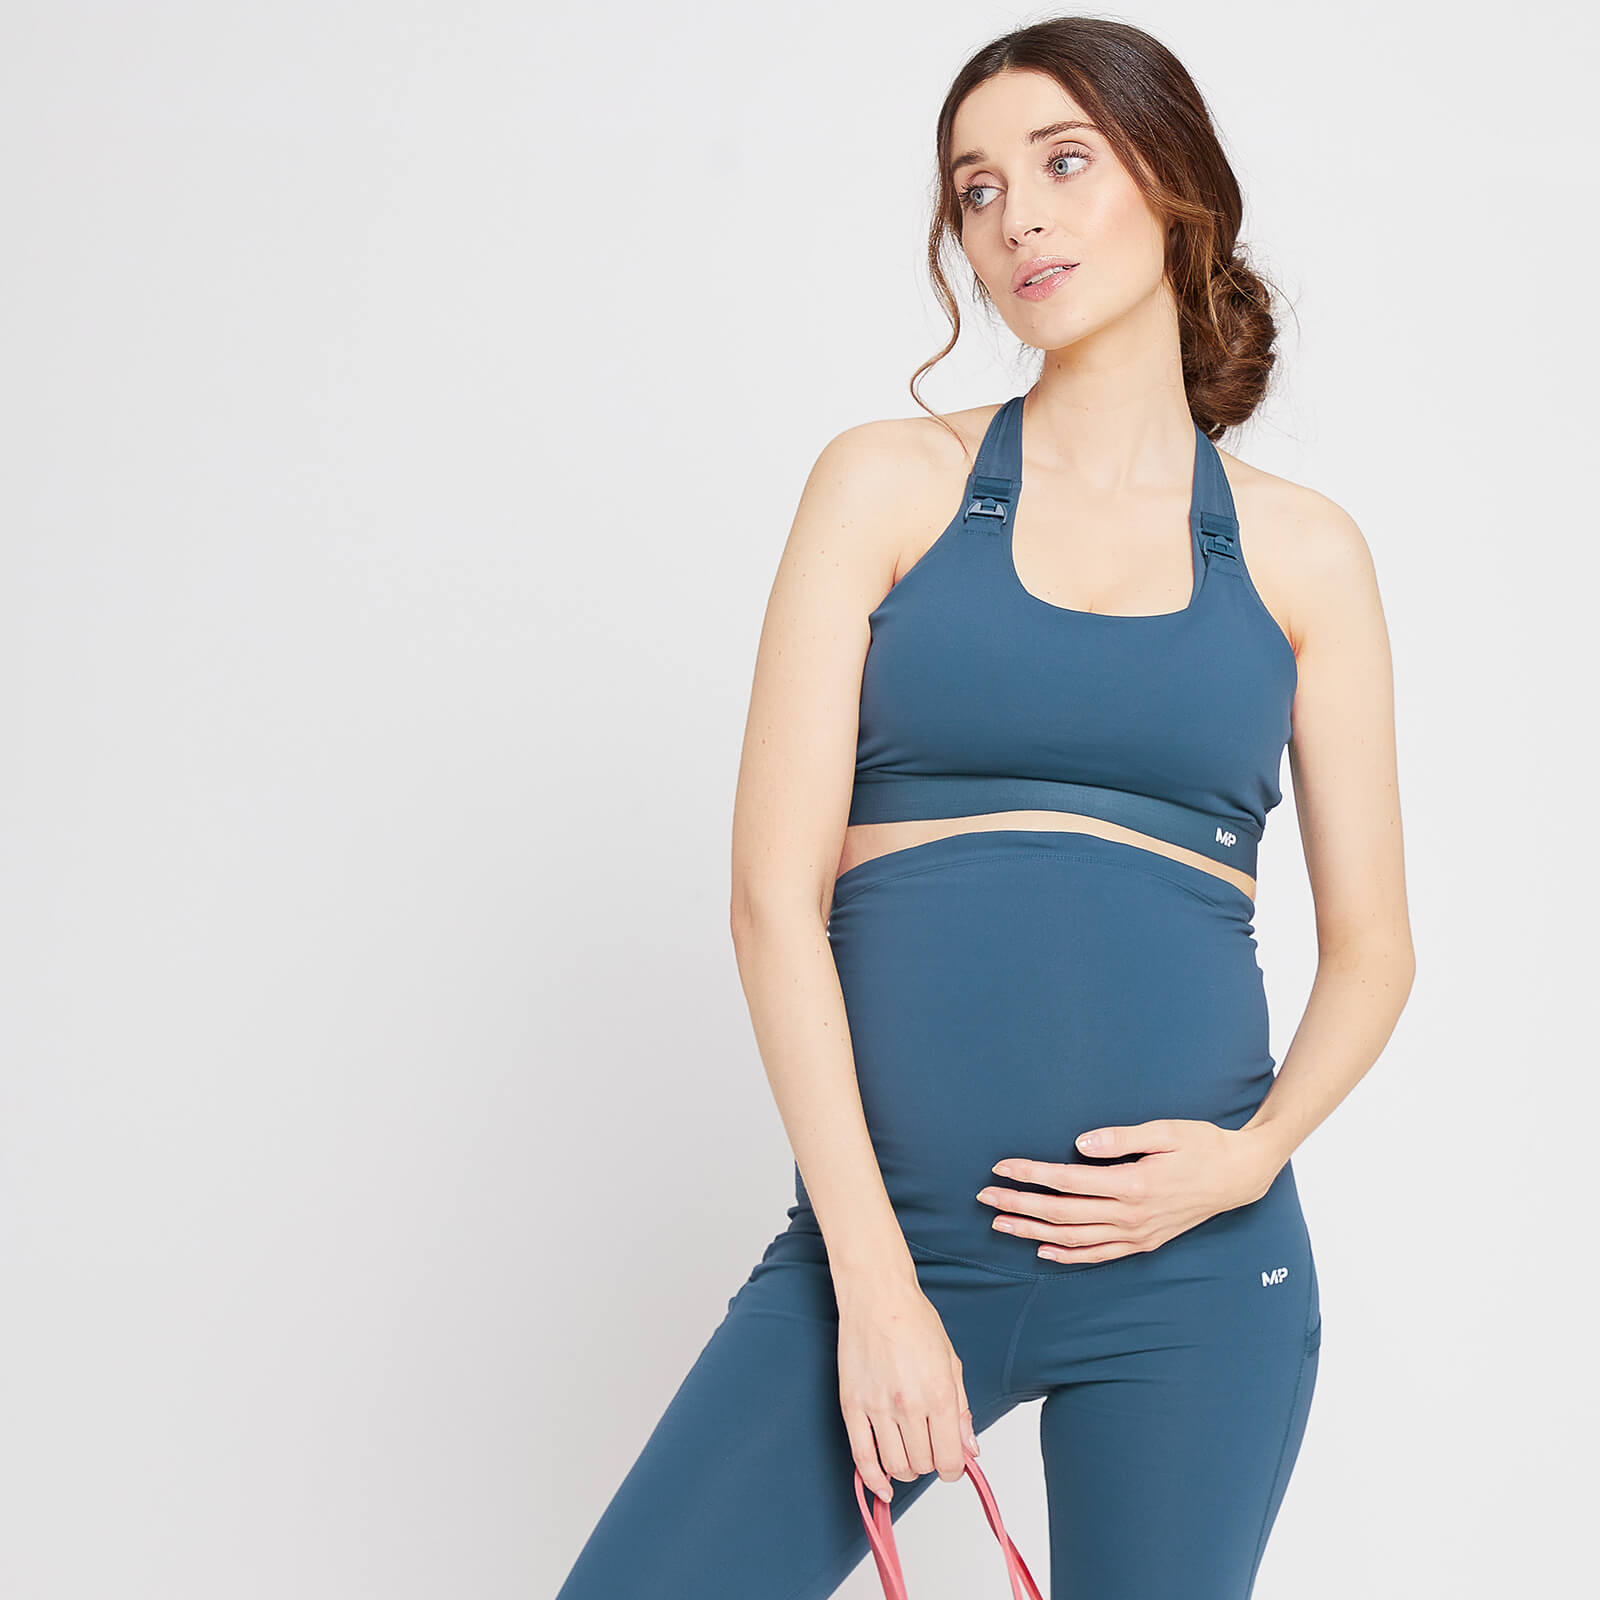 Дамски спортен сутиен за майчинство/кърмене Power на MP- светло синьо - XS